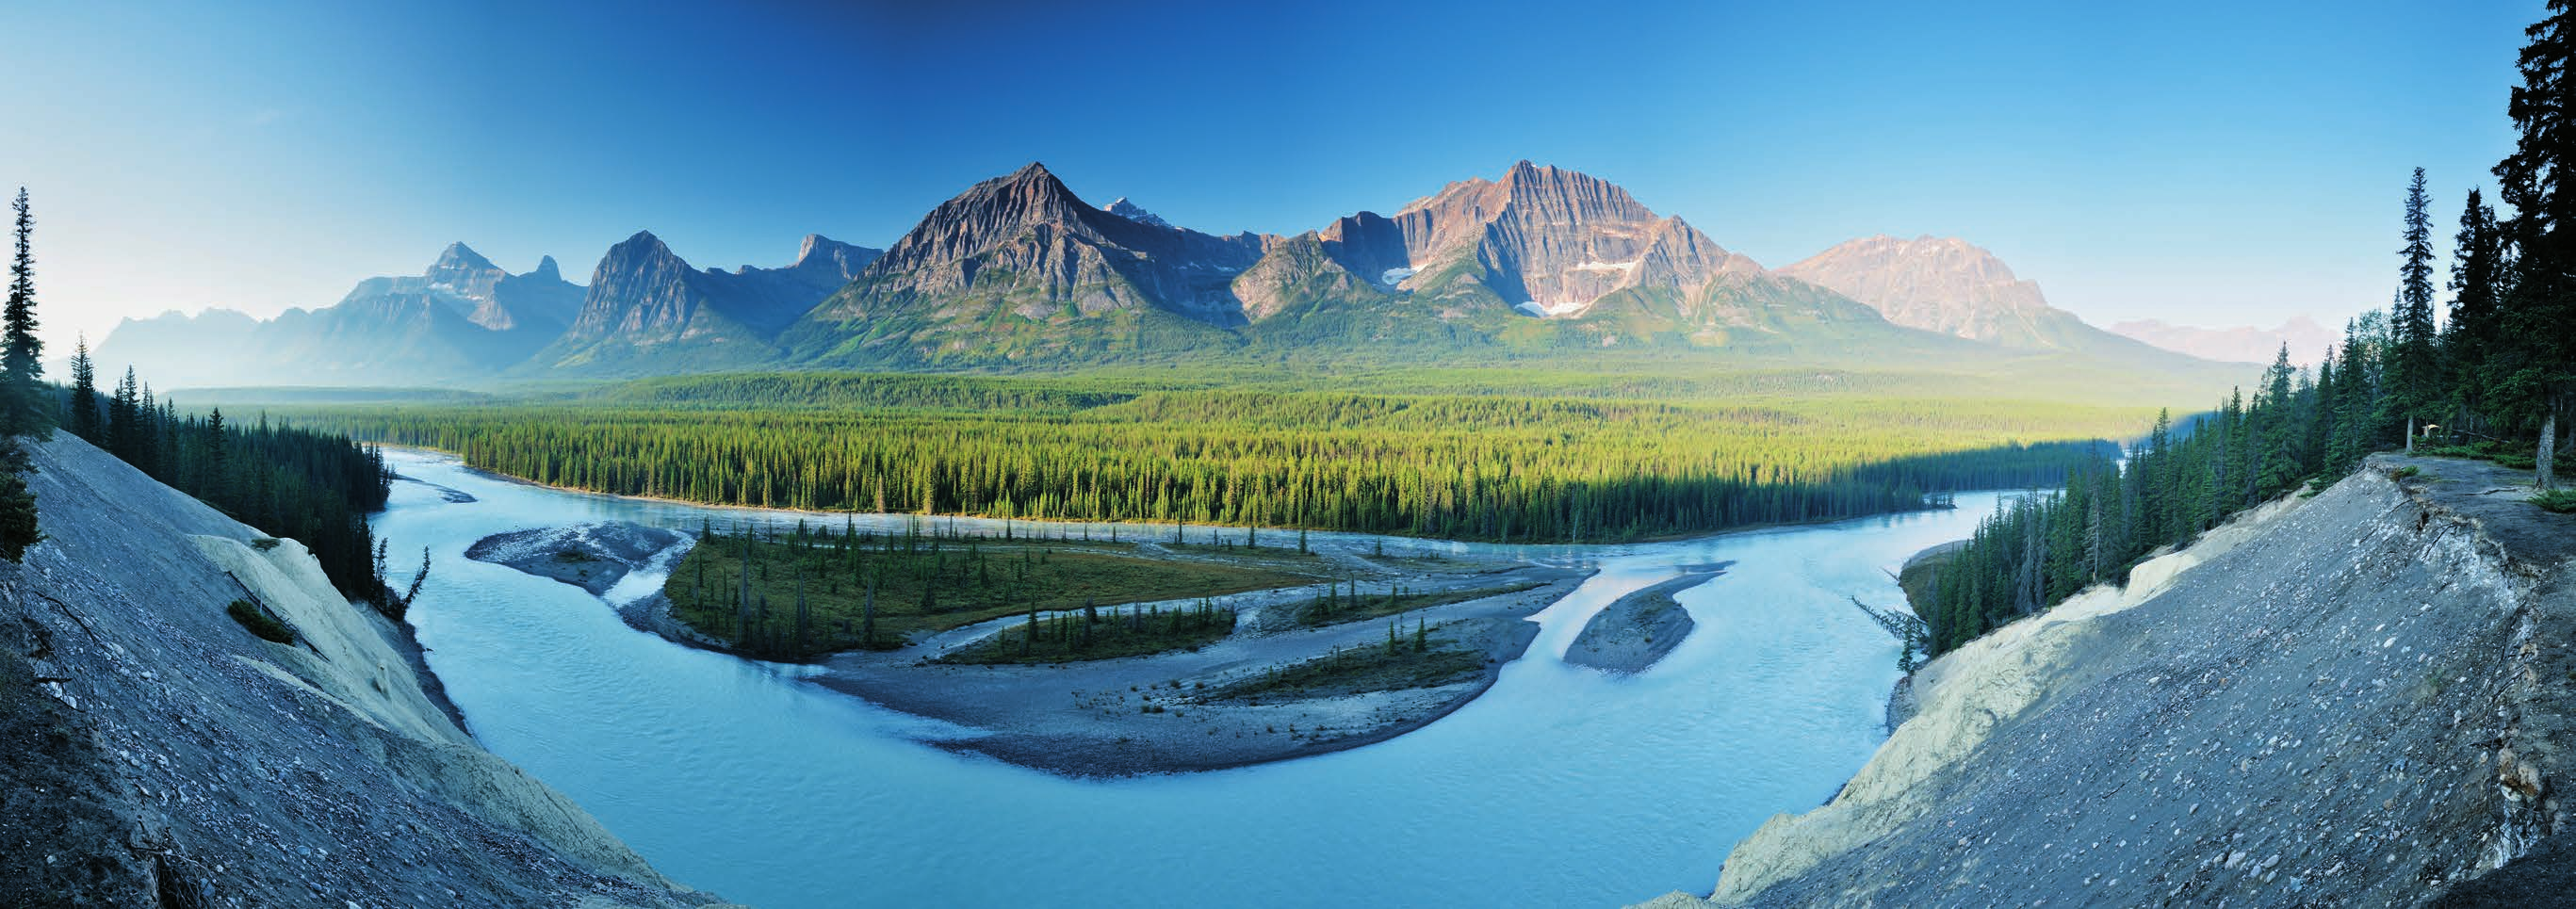 Hier präsentiert sich Kanada wie im Bilderbuch: Der Jasper National Park, auch er ist ein Weltnaturerbe, in dem etwa 2200 Kilometer langen Abschnitt der kanadischen Rocky Mountains gehört zu den